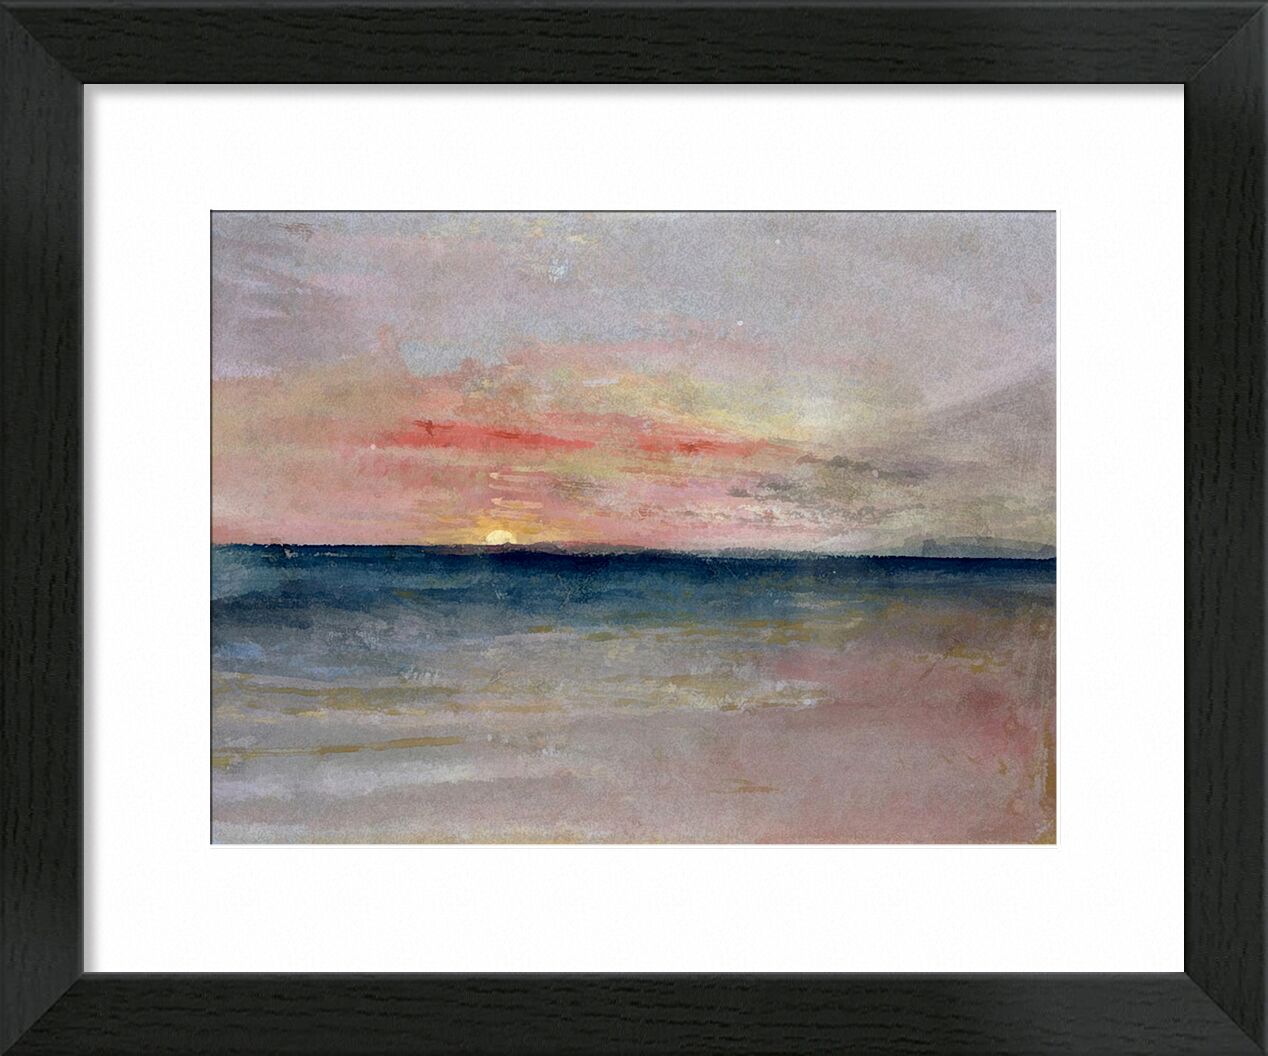 Sunset - TURNER desde Bellas artes, Prodi Art, TORNERO, verano, playa, mar, cielo, sol, pintura, puesta del sol